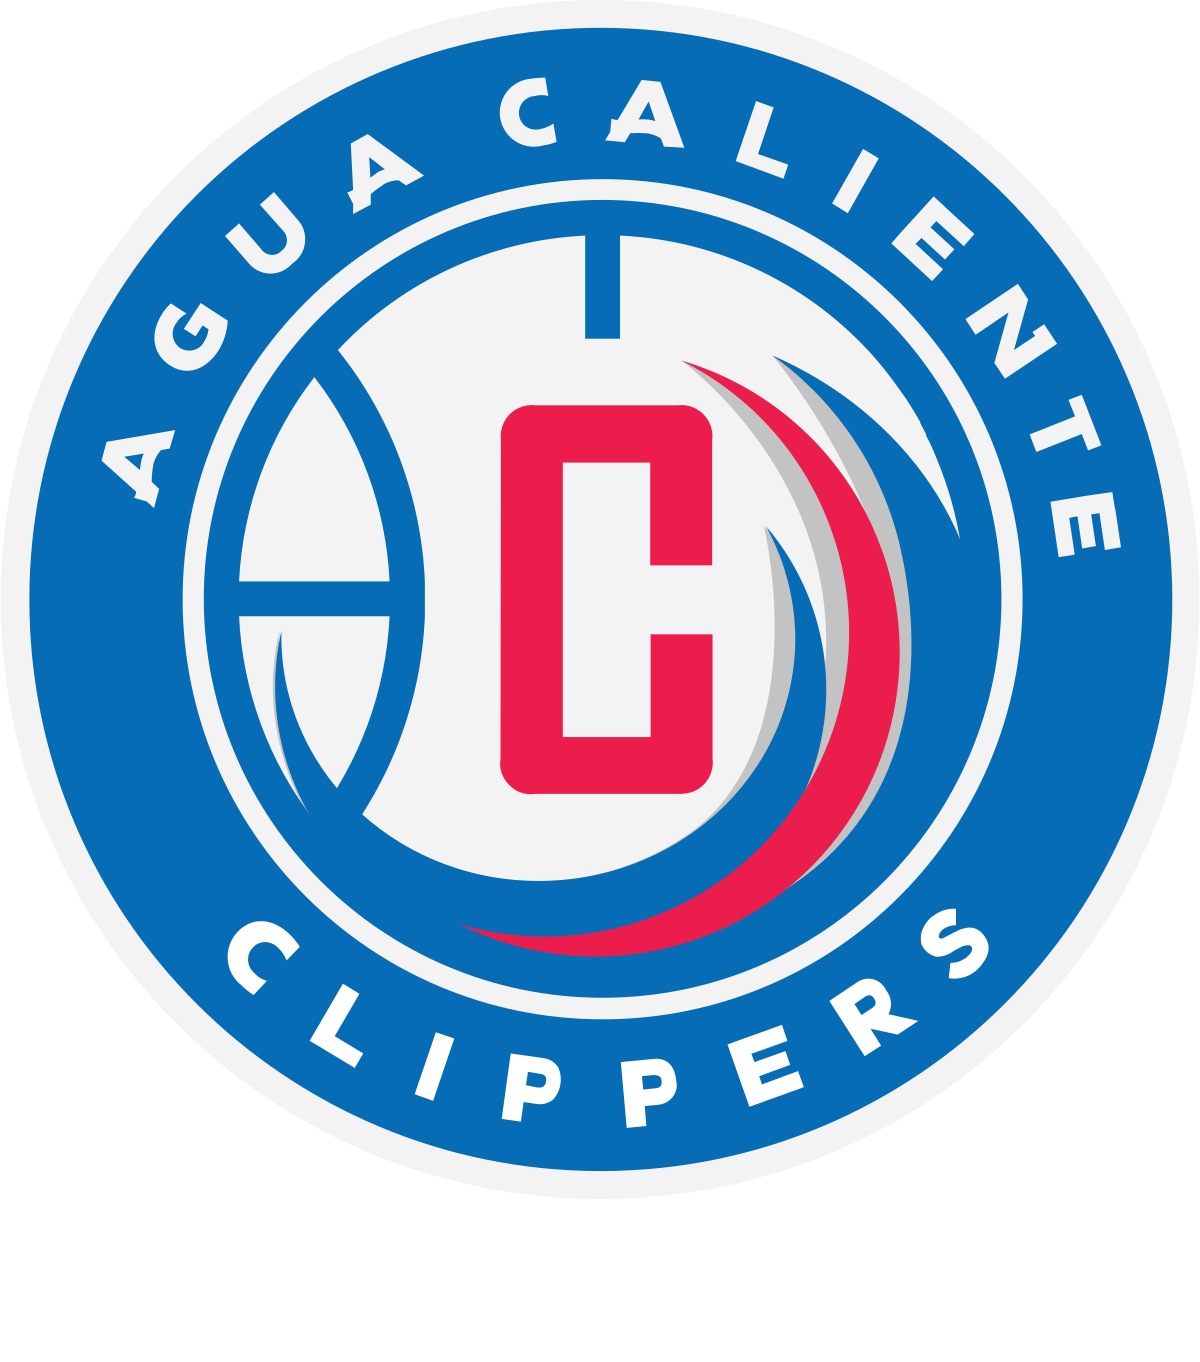 Agua Caliente Clippers - Wikipedia